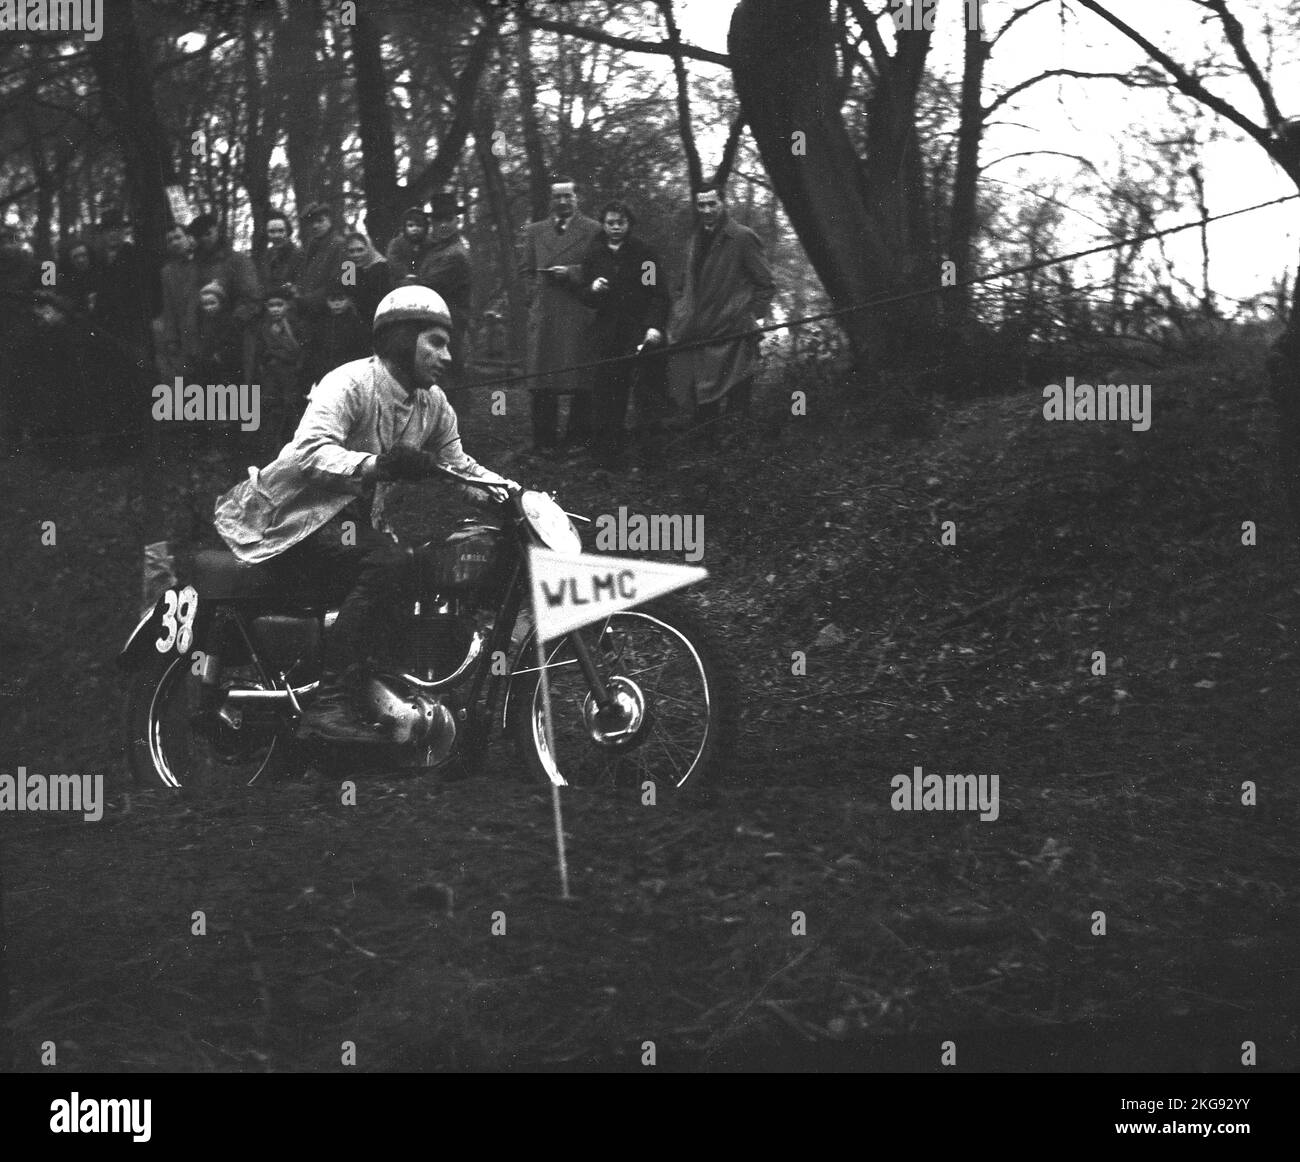 1954, storico, un concorrente nel Seacroft Scramble sulla sua moto Ariel, Inghilterra, Regno Unito. Fondata nel 1902, Ariel Motorcycles fu un costruttore britannico di prime biciclette, poi motociclette situate a Bournbrook, Birmingham, che sopravvisse fino al 1967. Foto Stock